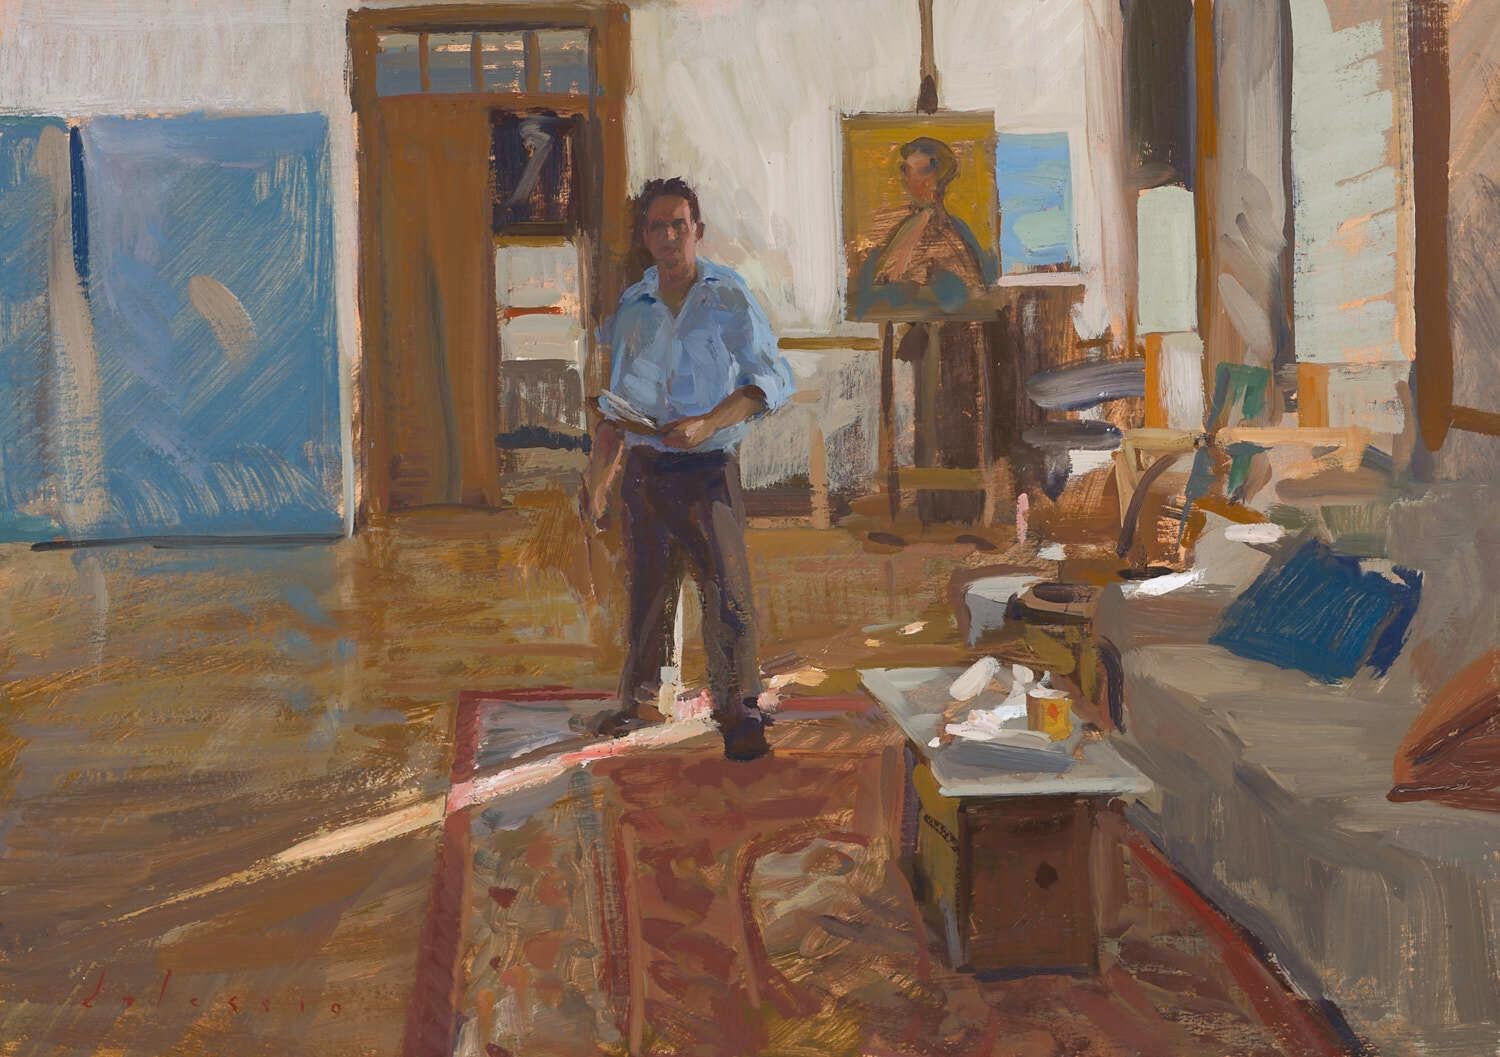 "Lockdown Self-Portrait" zeitgenössisches realistisches Porträt des Künstlers in seinem Studio